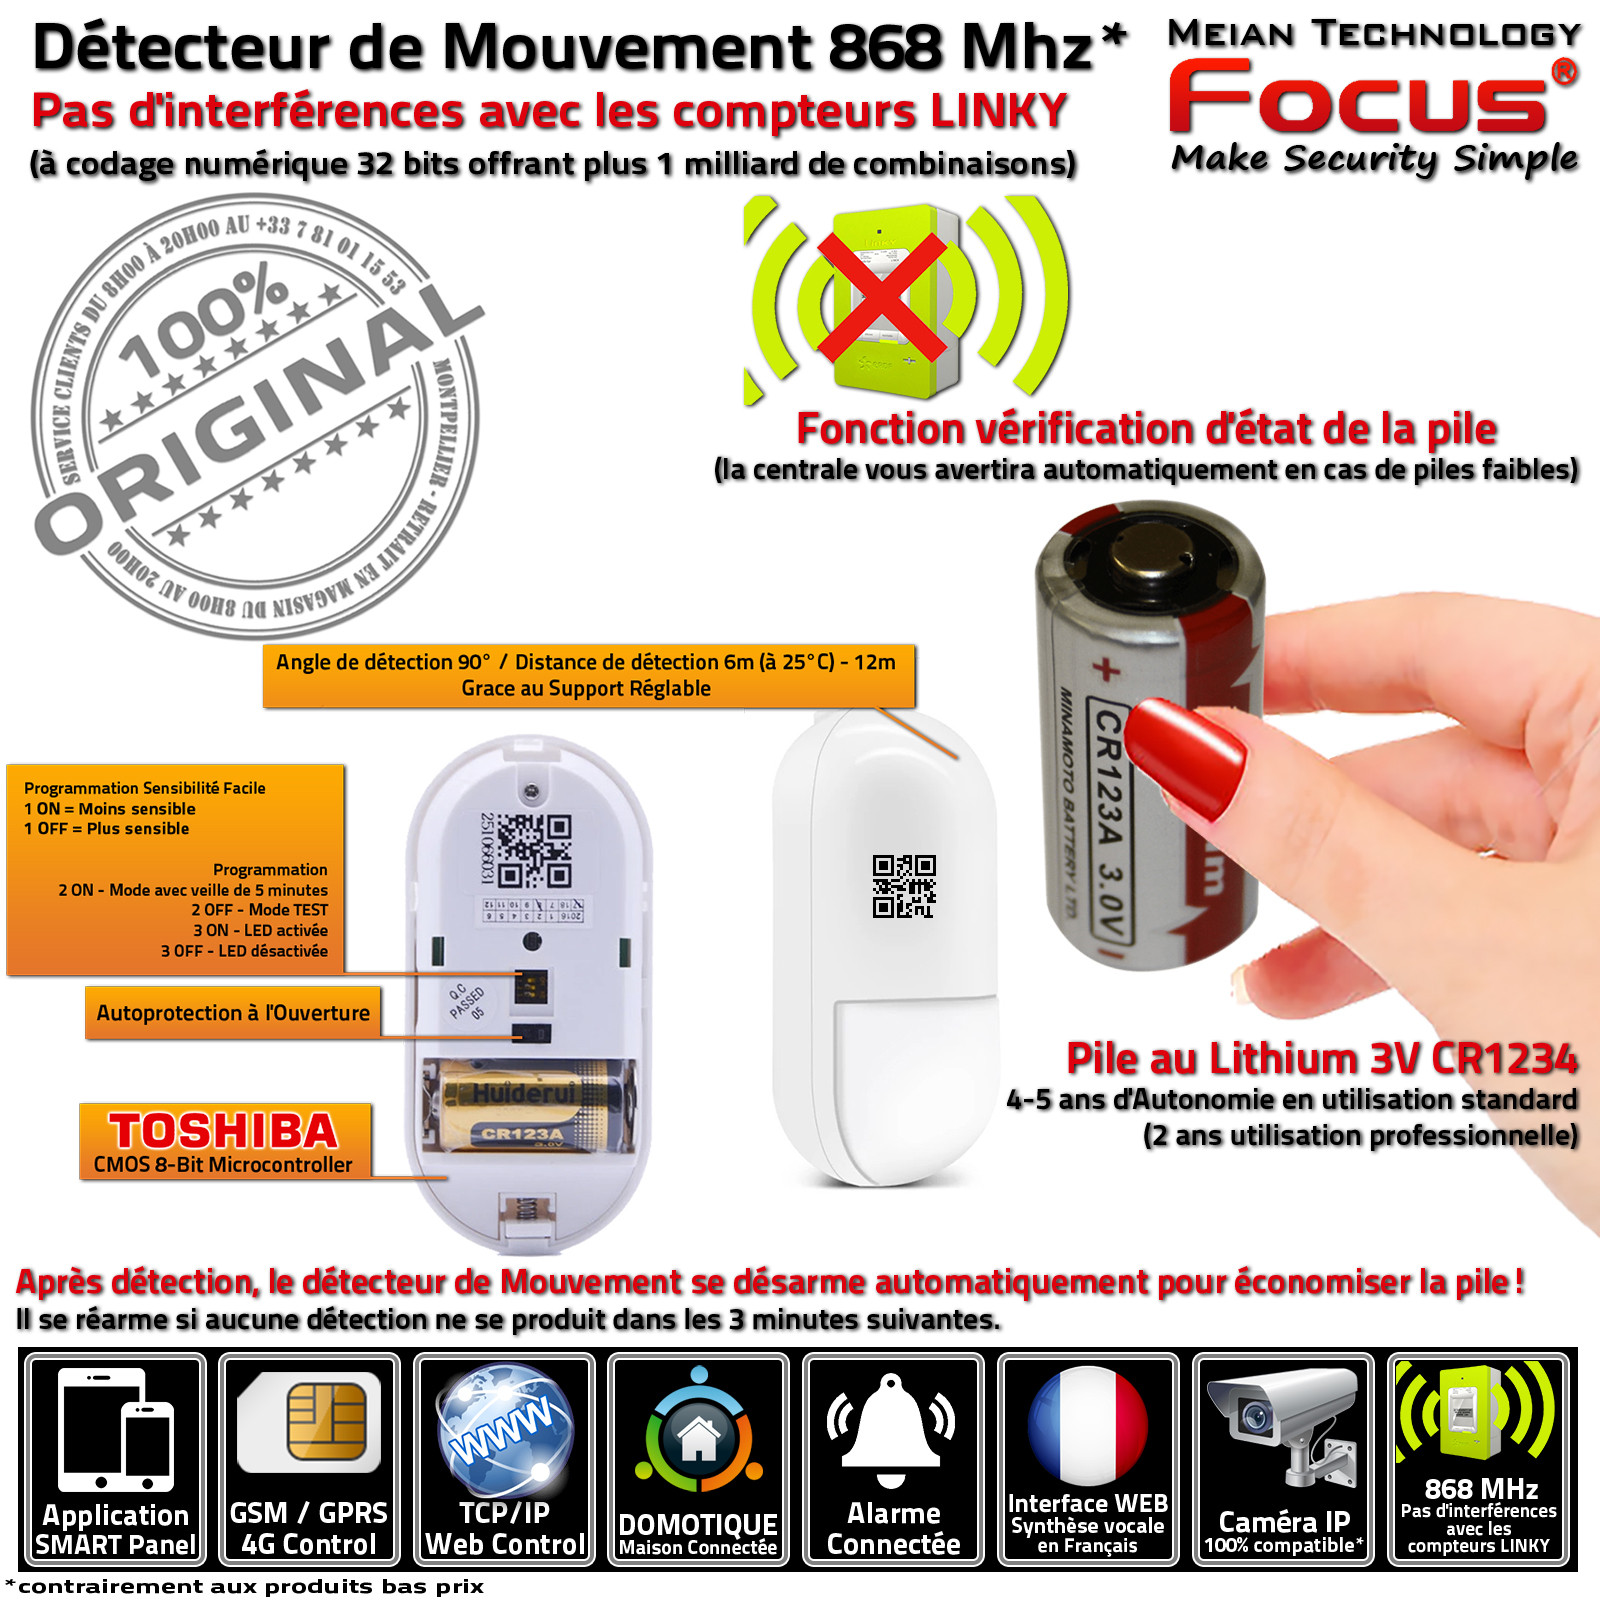 Détecteur Mouvement Infrarouge Passif MC-565R PIR Centrale Alarme Connectée Meian FOCUS 868 MHz Système Sécurité Réseau GSM 4G